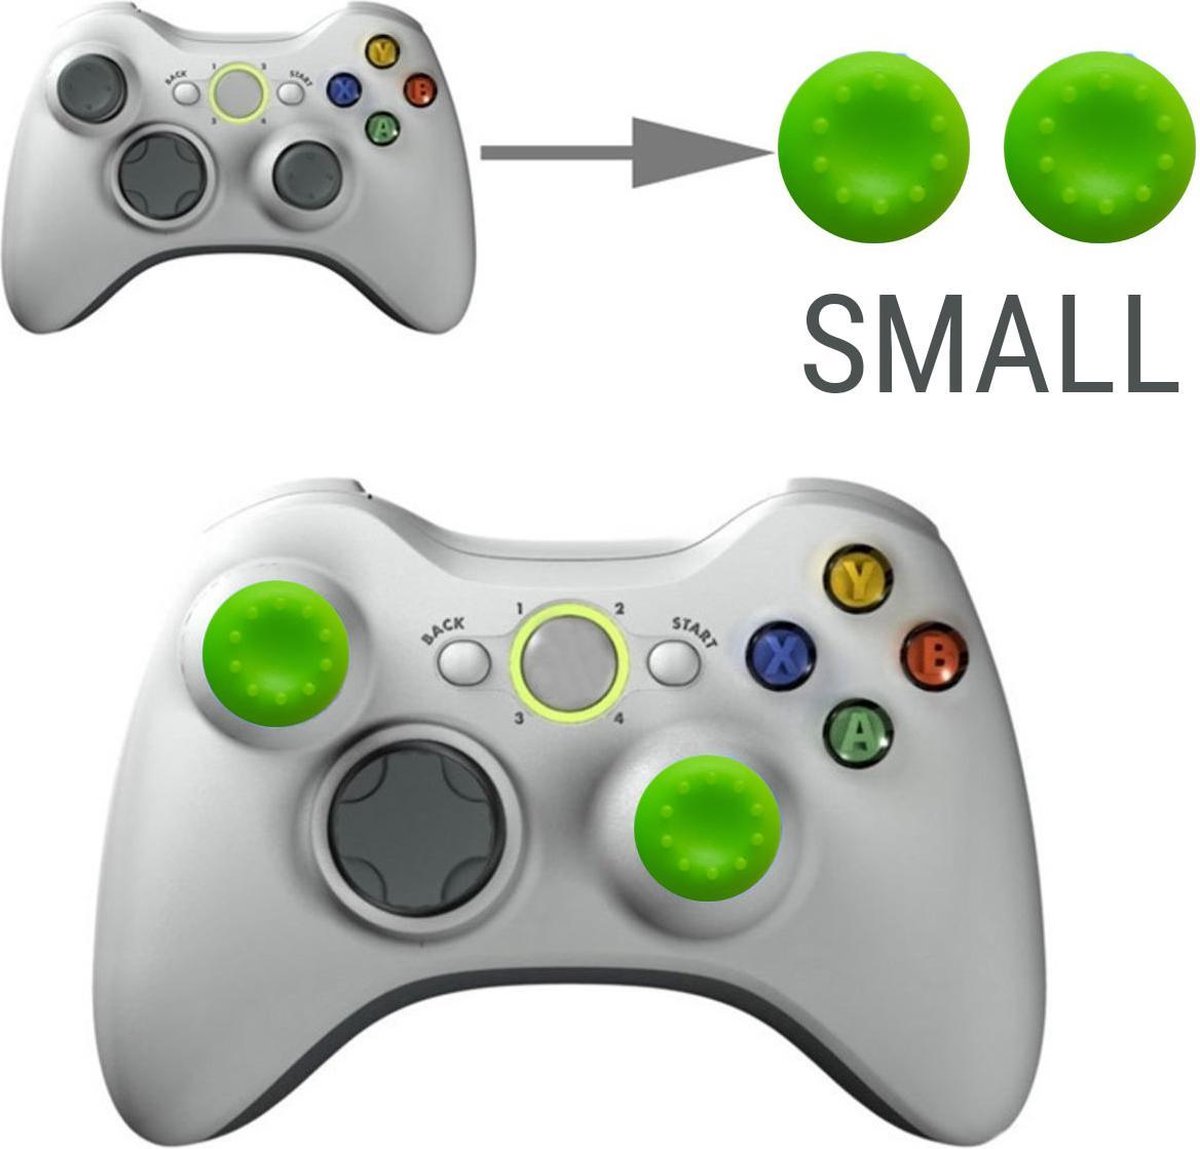 Thumb grips - Controller Thumbgrips - Joystick Cap - Thumbsticks - Thumb Grip Cap geschikt voor Switch, Switch Pro, PS4 en Xbox - 2 stuks Klein 10 dots extra grip Groen